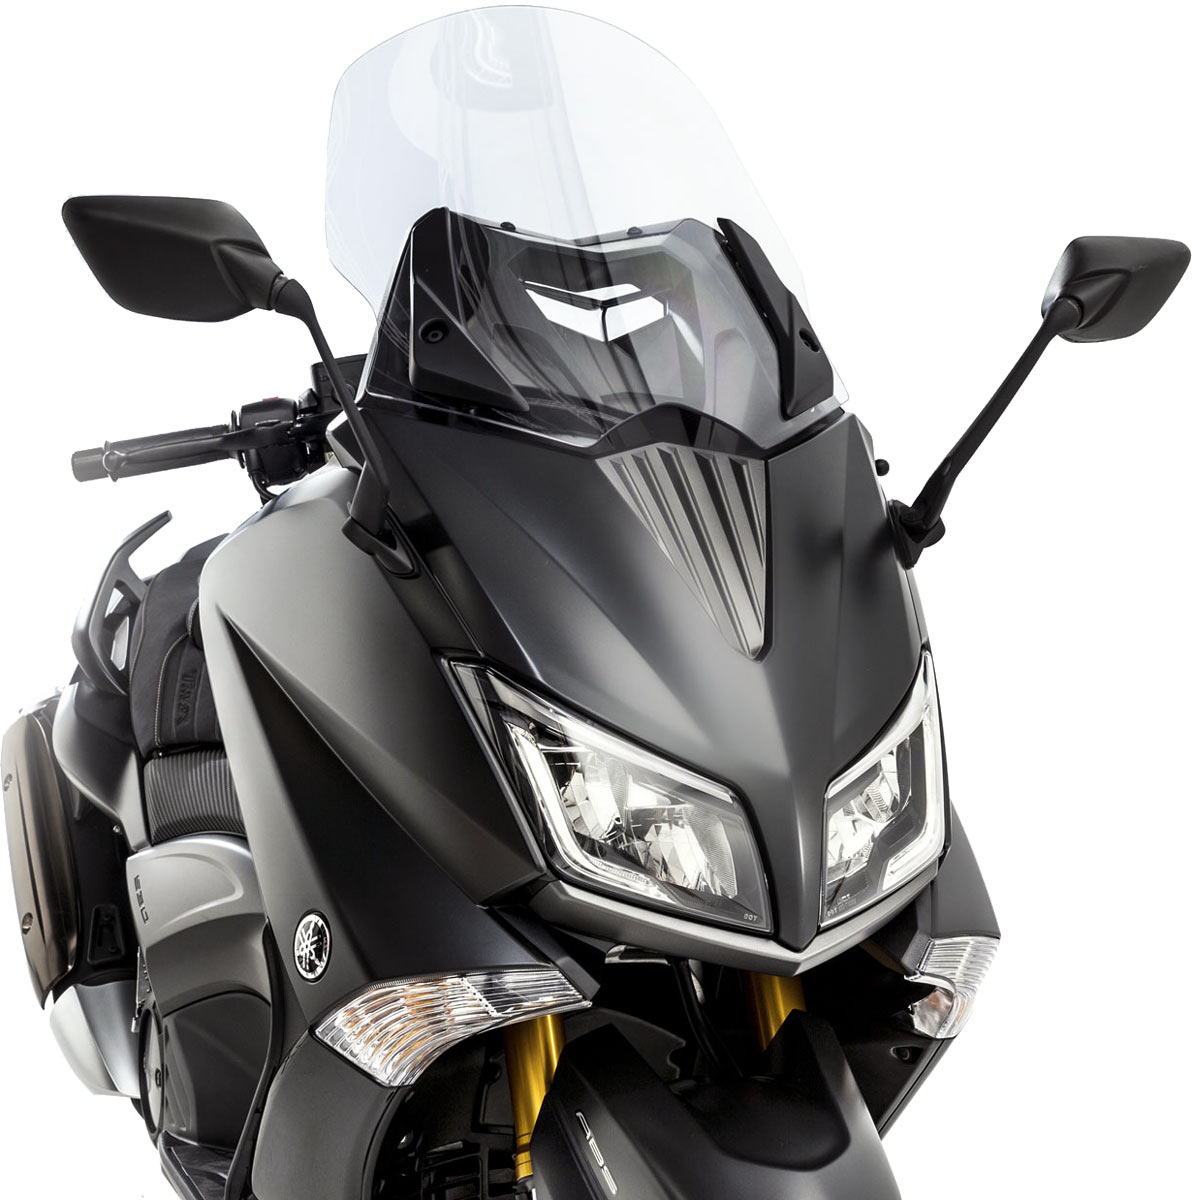 Le Yamaha Tmax 2015 arbore une face avant plus aérodynamique